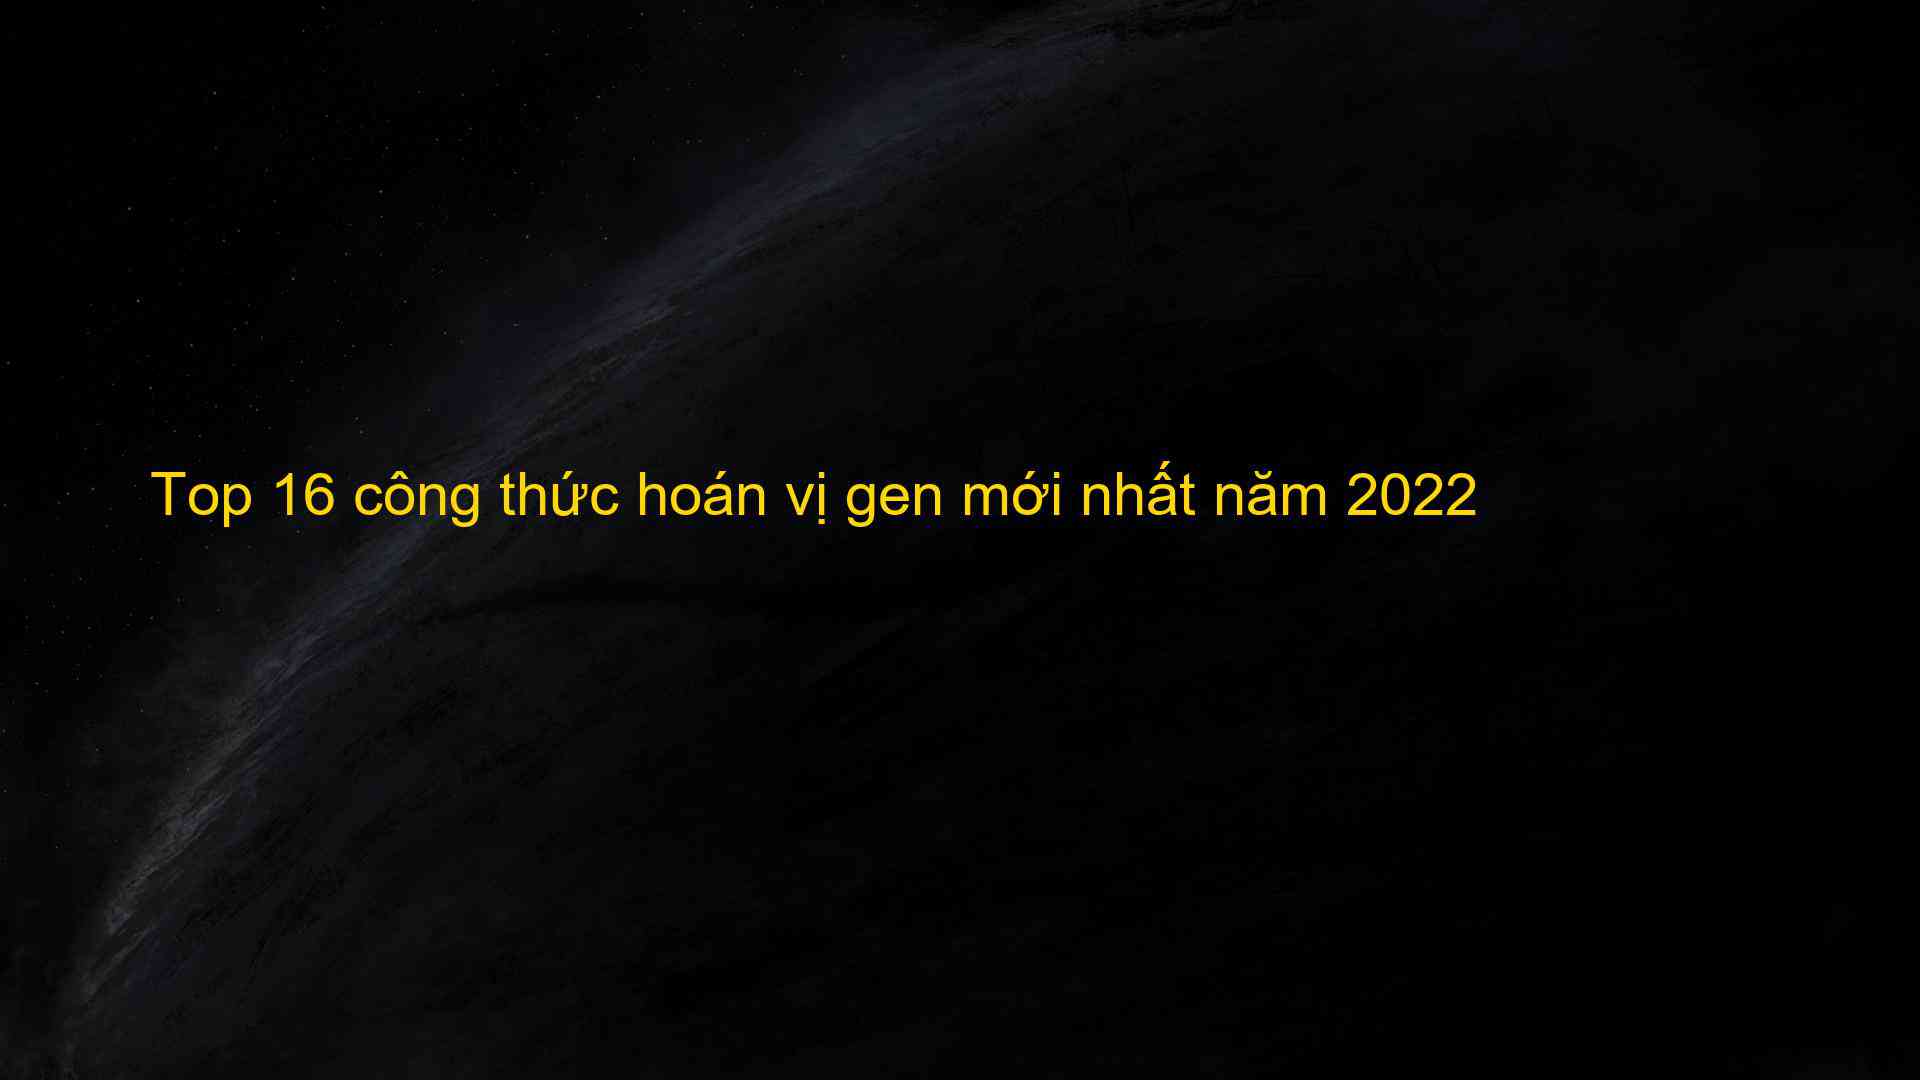 Top 16 cong thuc hoan vi gen moi nhat nam 2022 1659882107